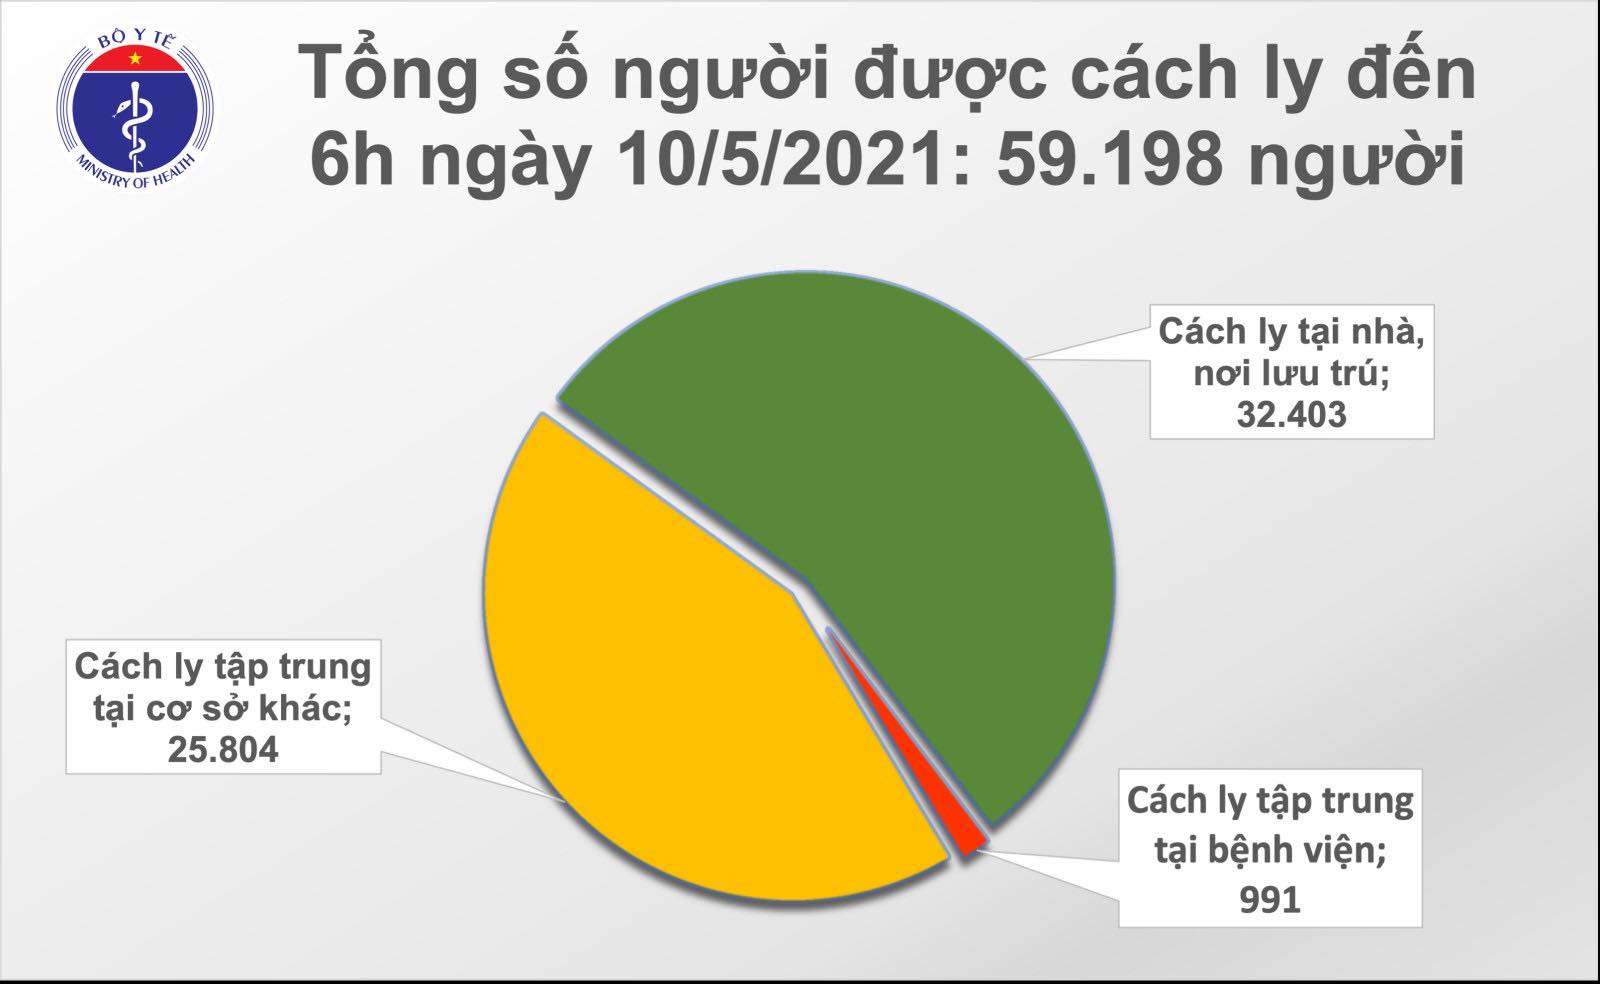 Sáng 10/5, Việt Nam có 80 ca mắc mới COVID-19, trong đó 78 ca ghi nhận tại cộng đồng - Ảnh 2.